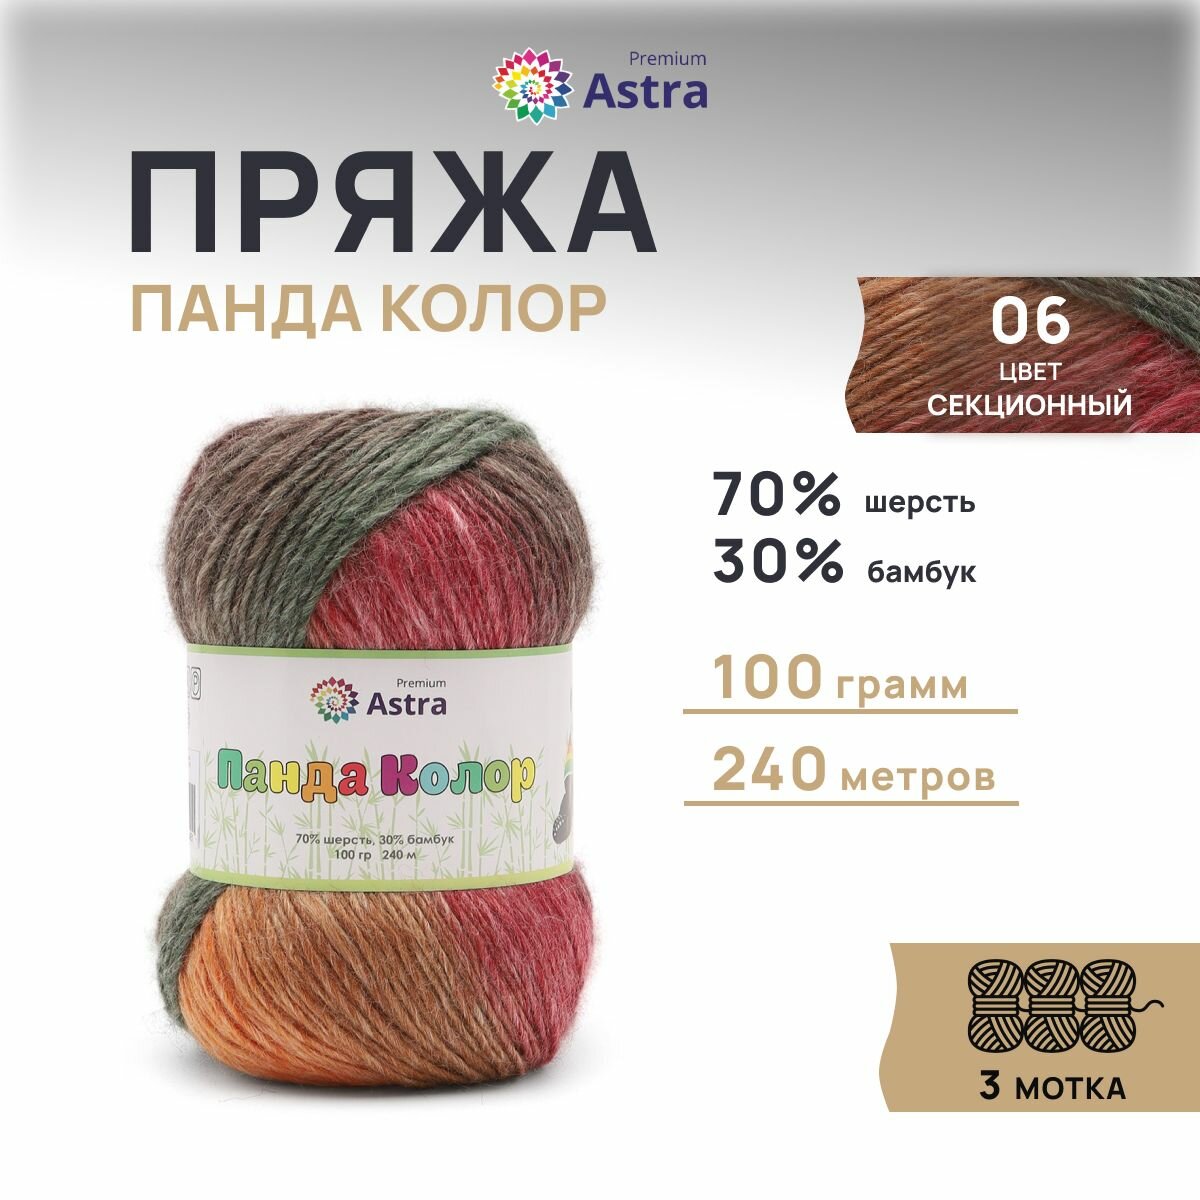 Пряжа для вязания Astra Premium 'Панда Колор' (Panda Color) 100г, 240м (70% шерсть, 30% бамбук) (06 секционный), 3 мотка